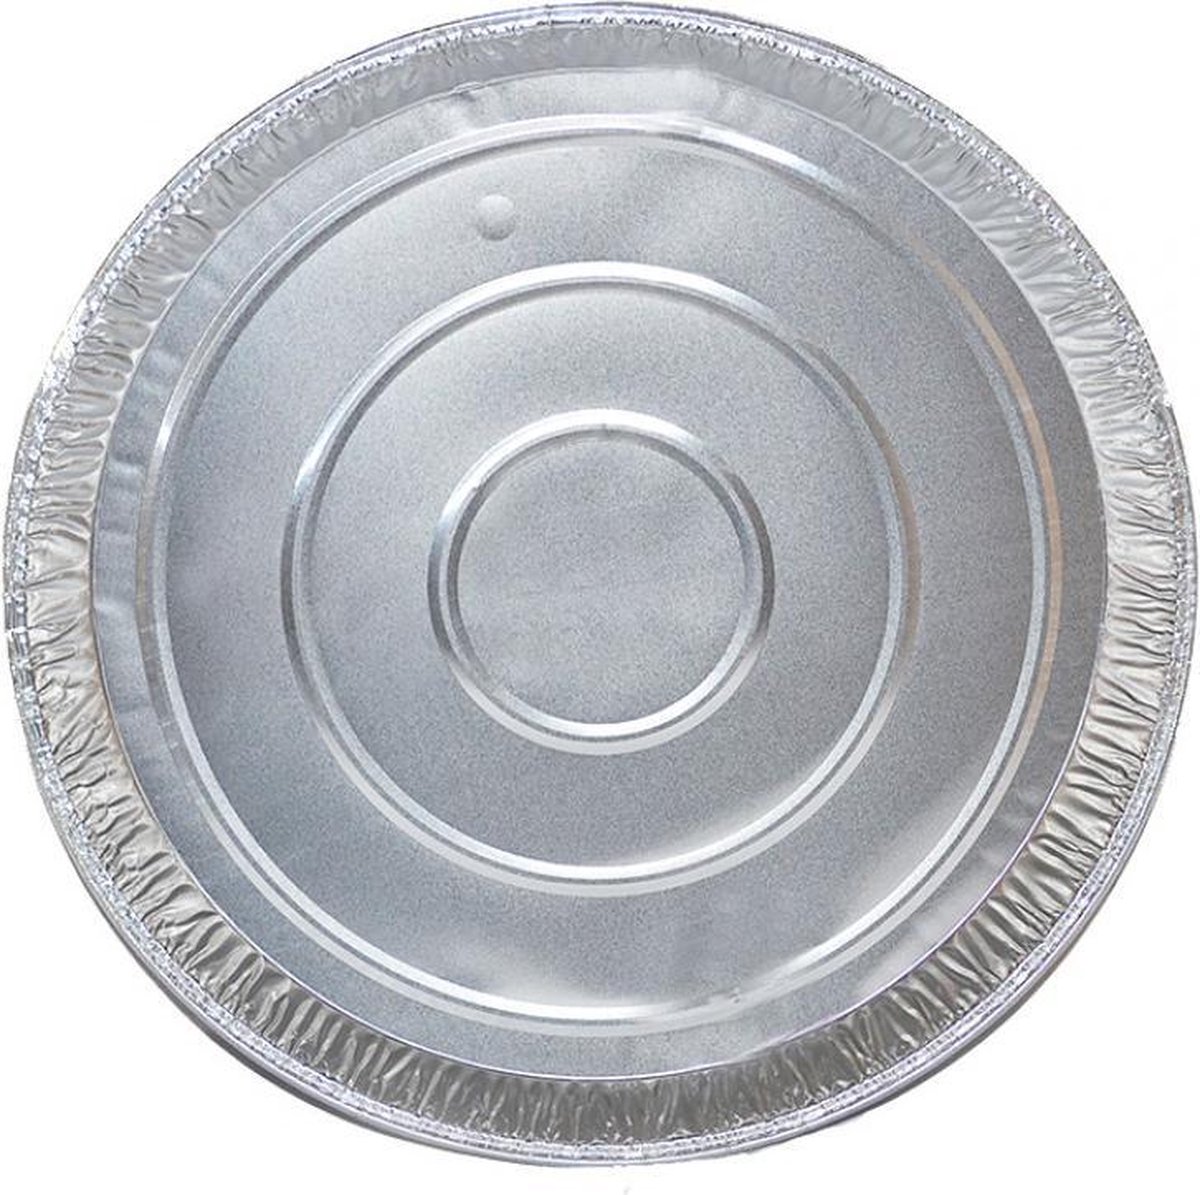 Aluminium ronde voedsel containers voor Pizza’s - verpakking van 5 containers